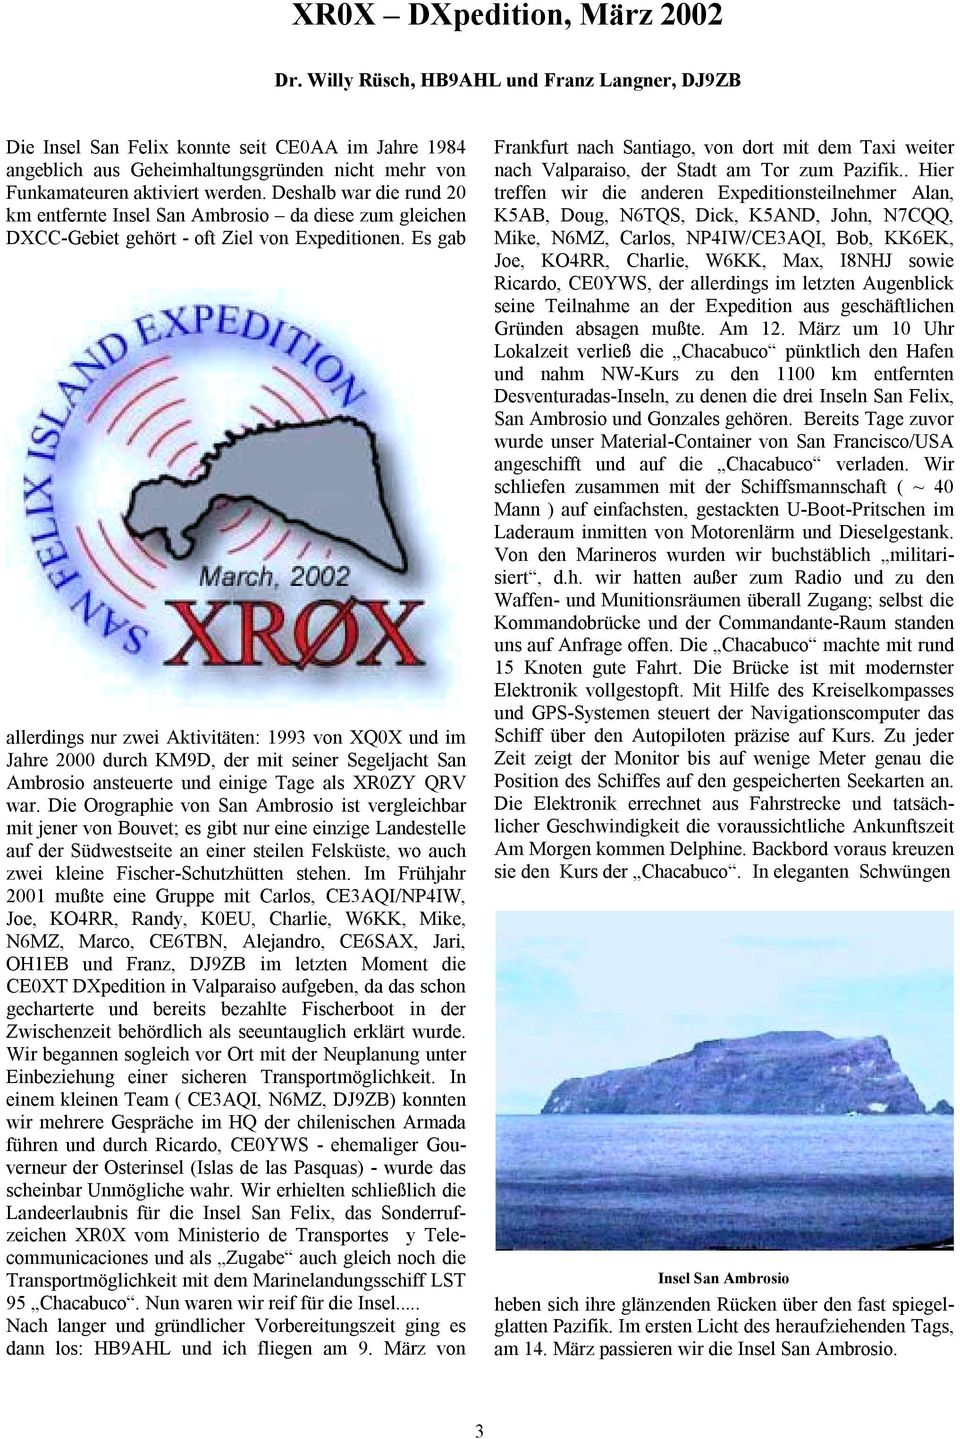 Deshalb war die rund 20 km entfernte Insel San Ambrosio da diese zum gleichen DXCC-Gebiet gehört - oft Ziel von Expeditionen.